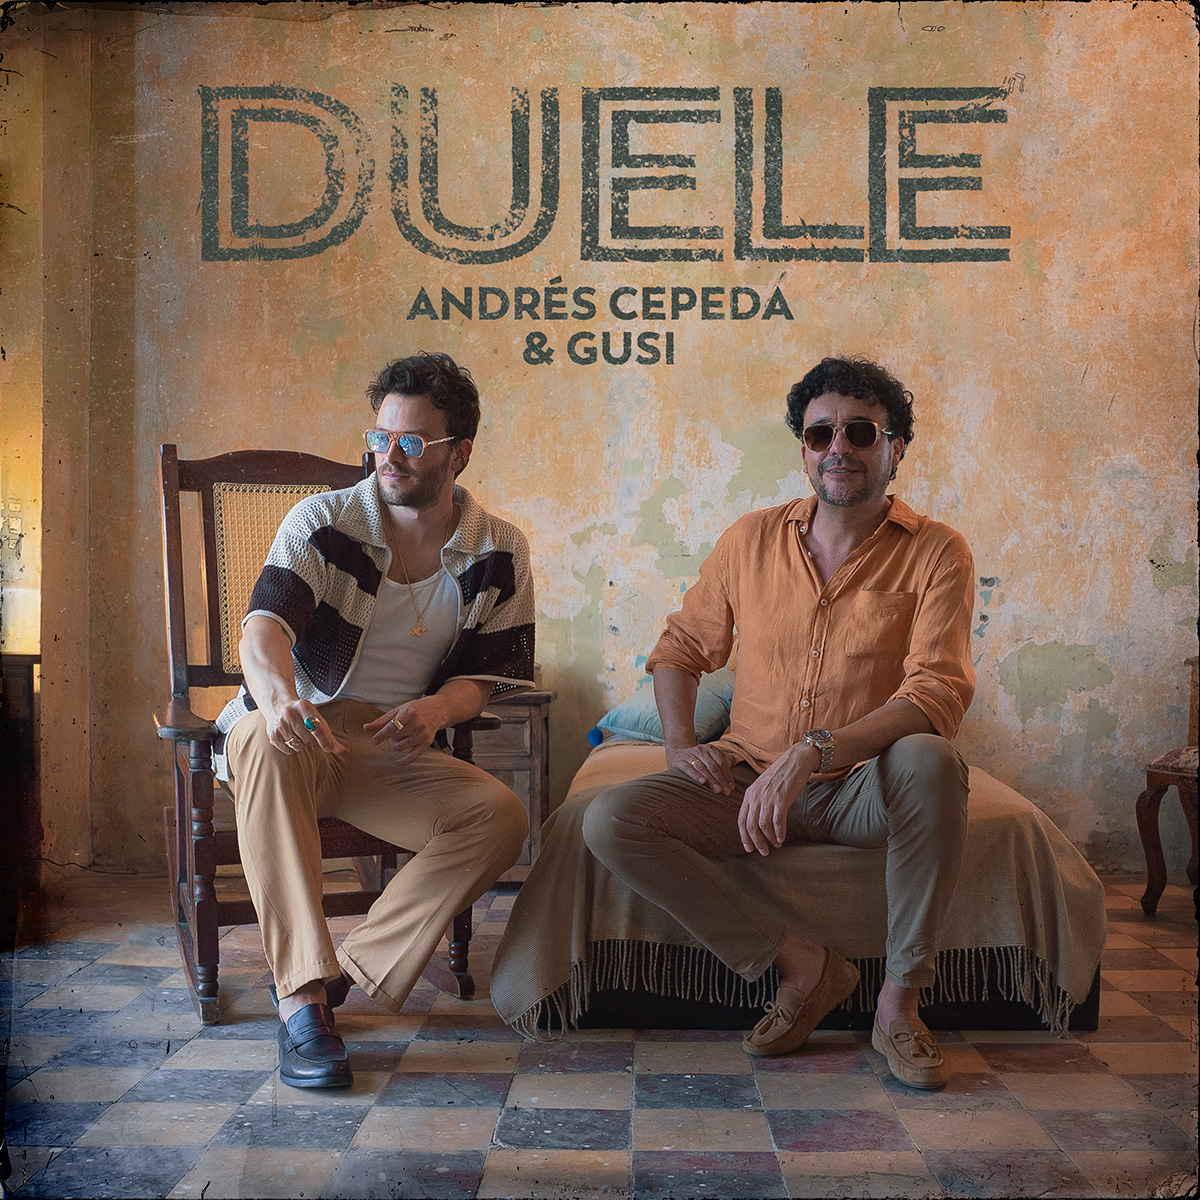 ANDRÉS CEPEDA presenta su nuevo éxito “DUELE” a dúo con GUSI.